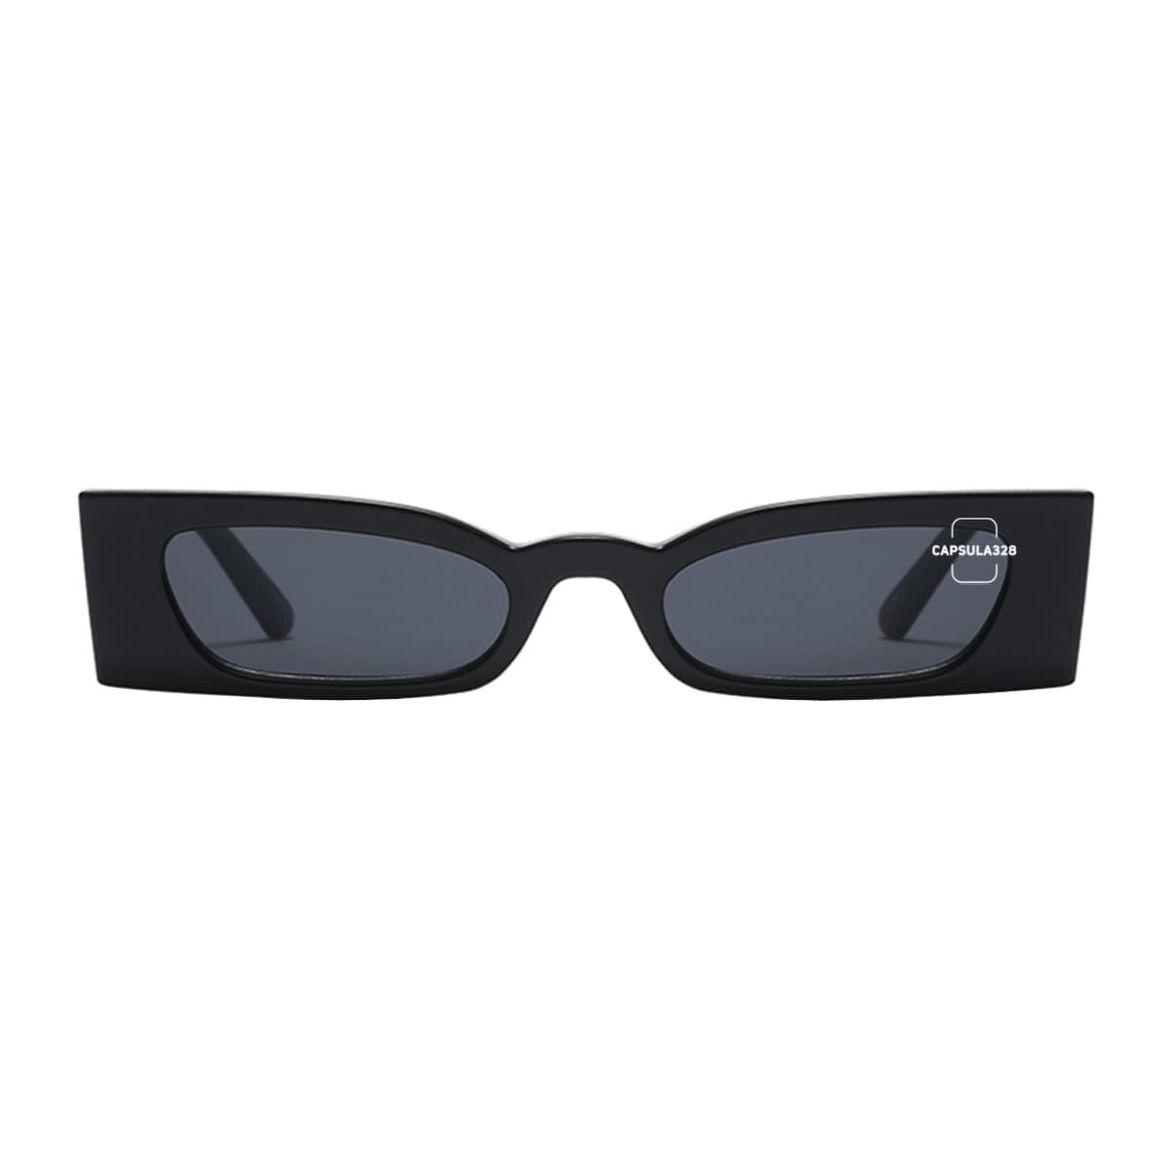 Солнцезащитные очки Rema 2631